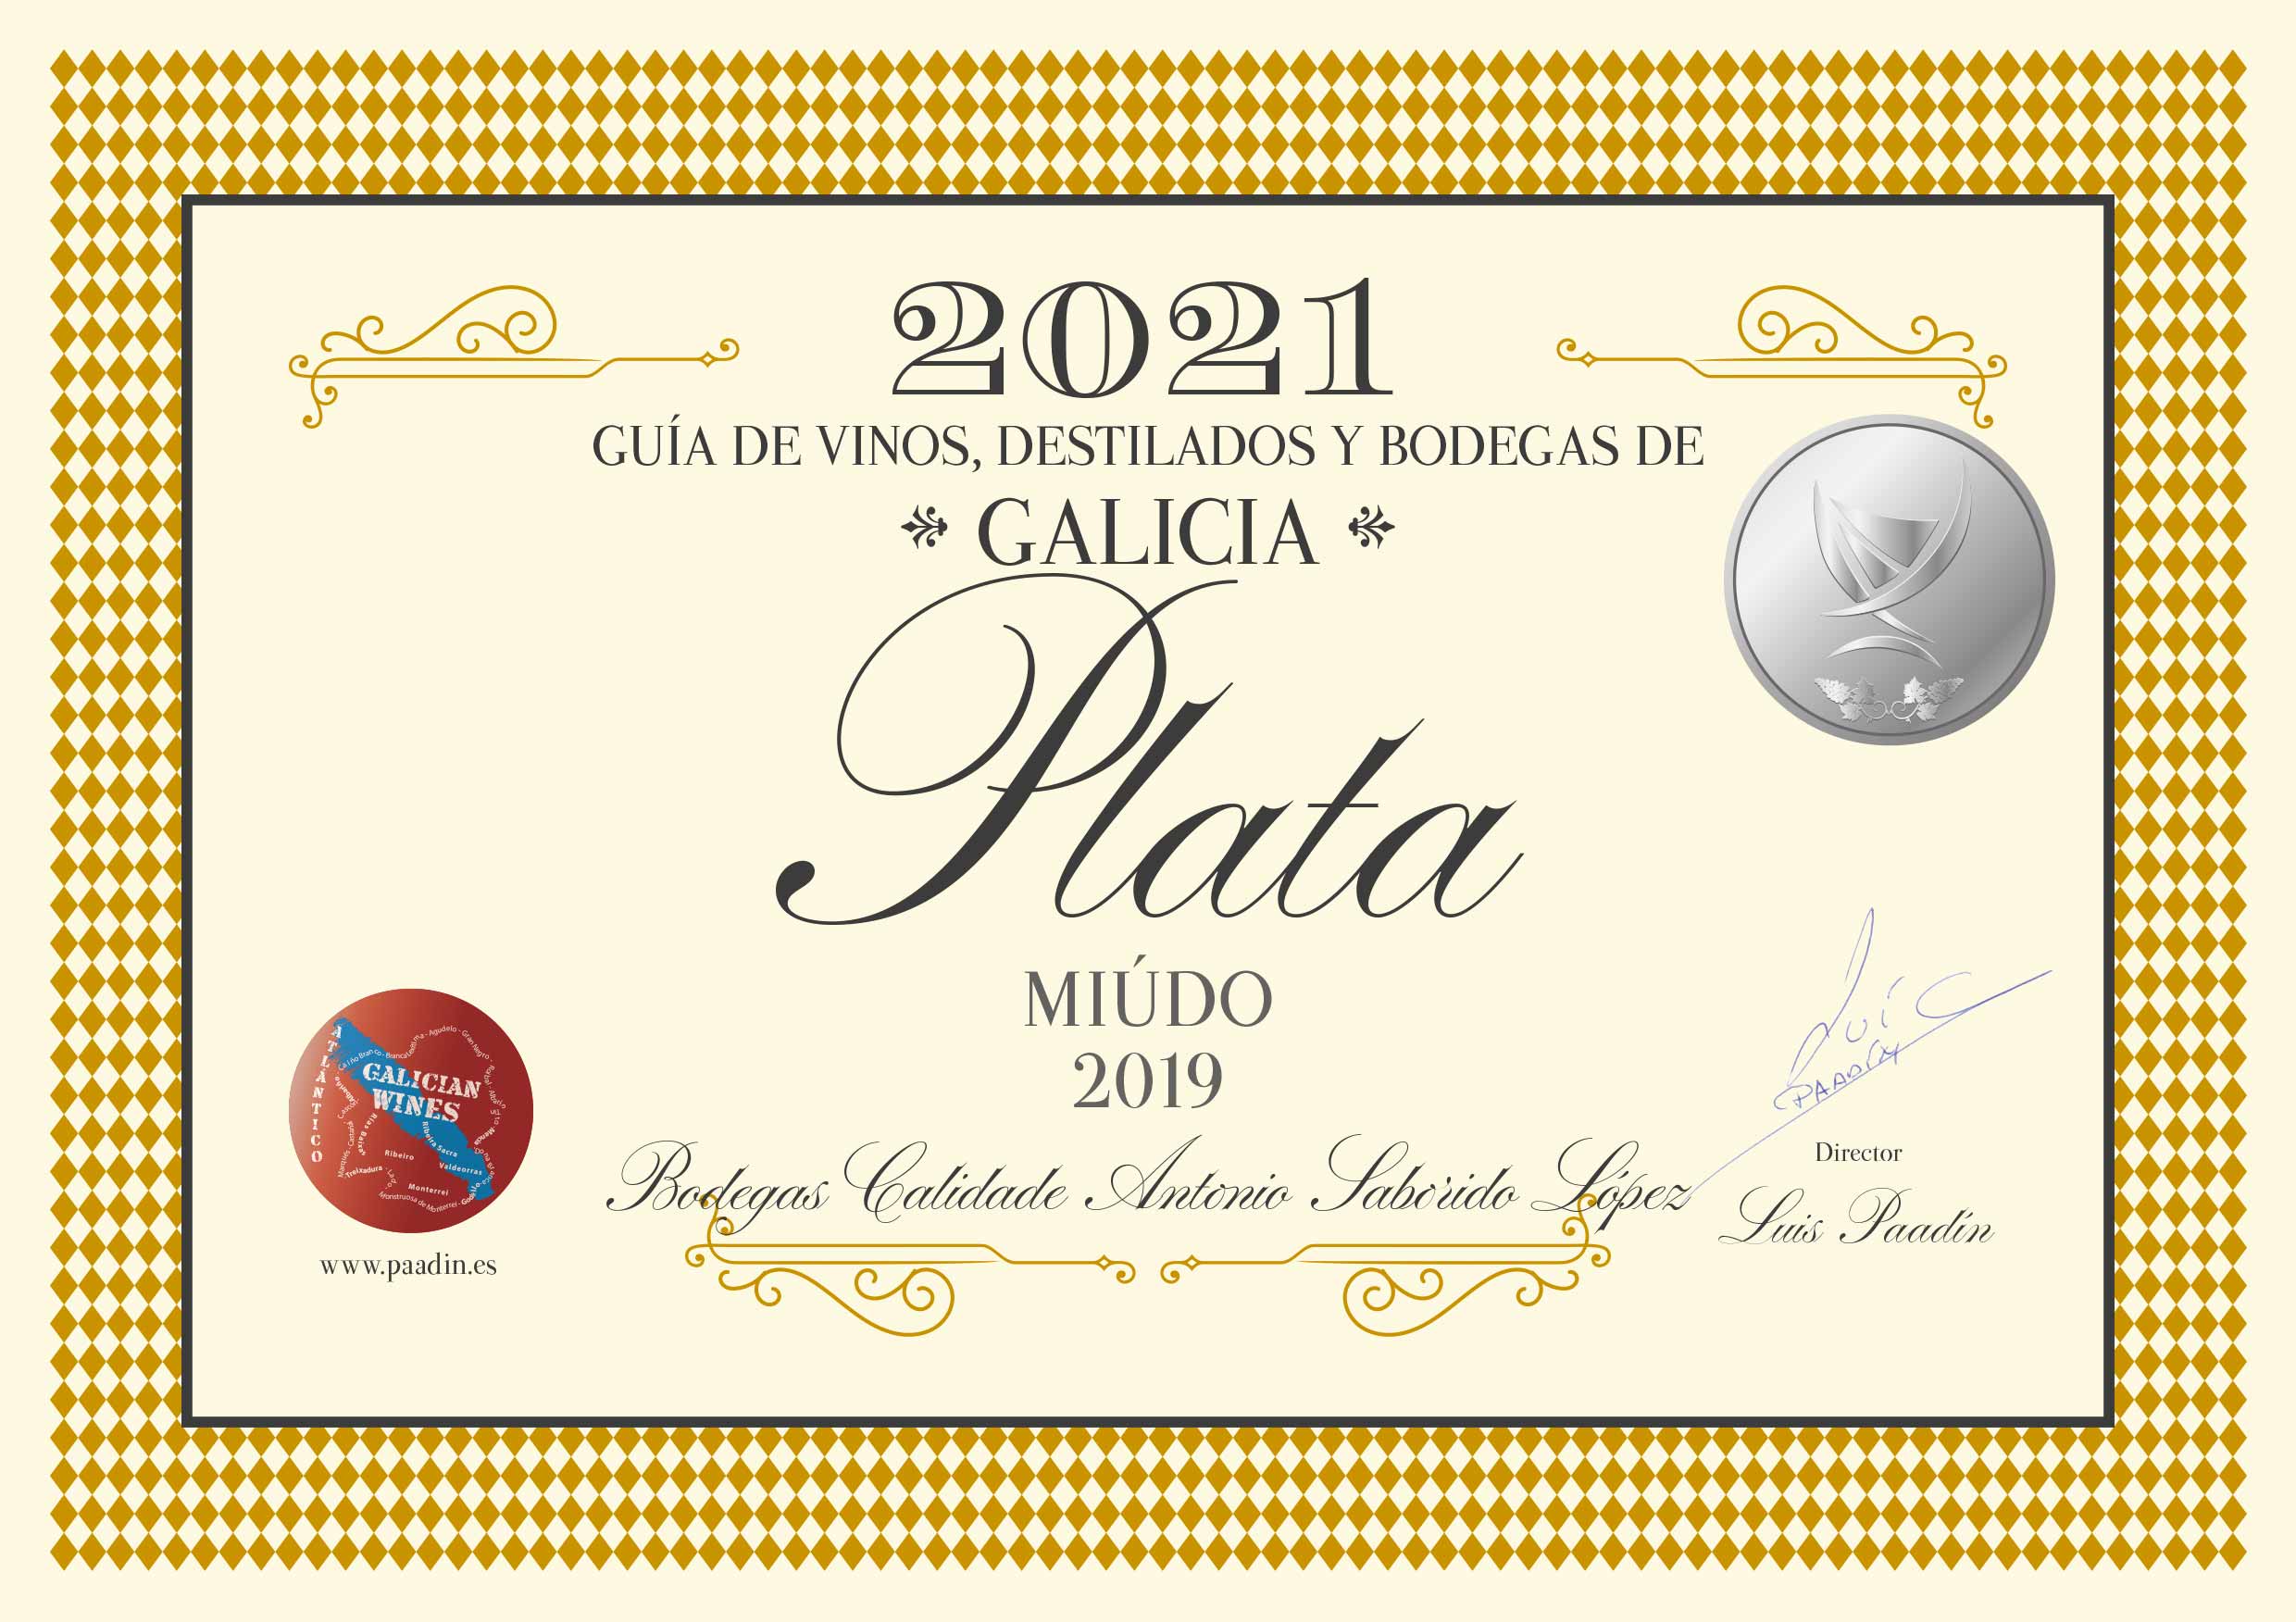 Miúdo 2019 - Medalla de Plata por la Guía de vinos, destilados y bodegas de Galicia